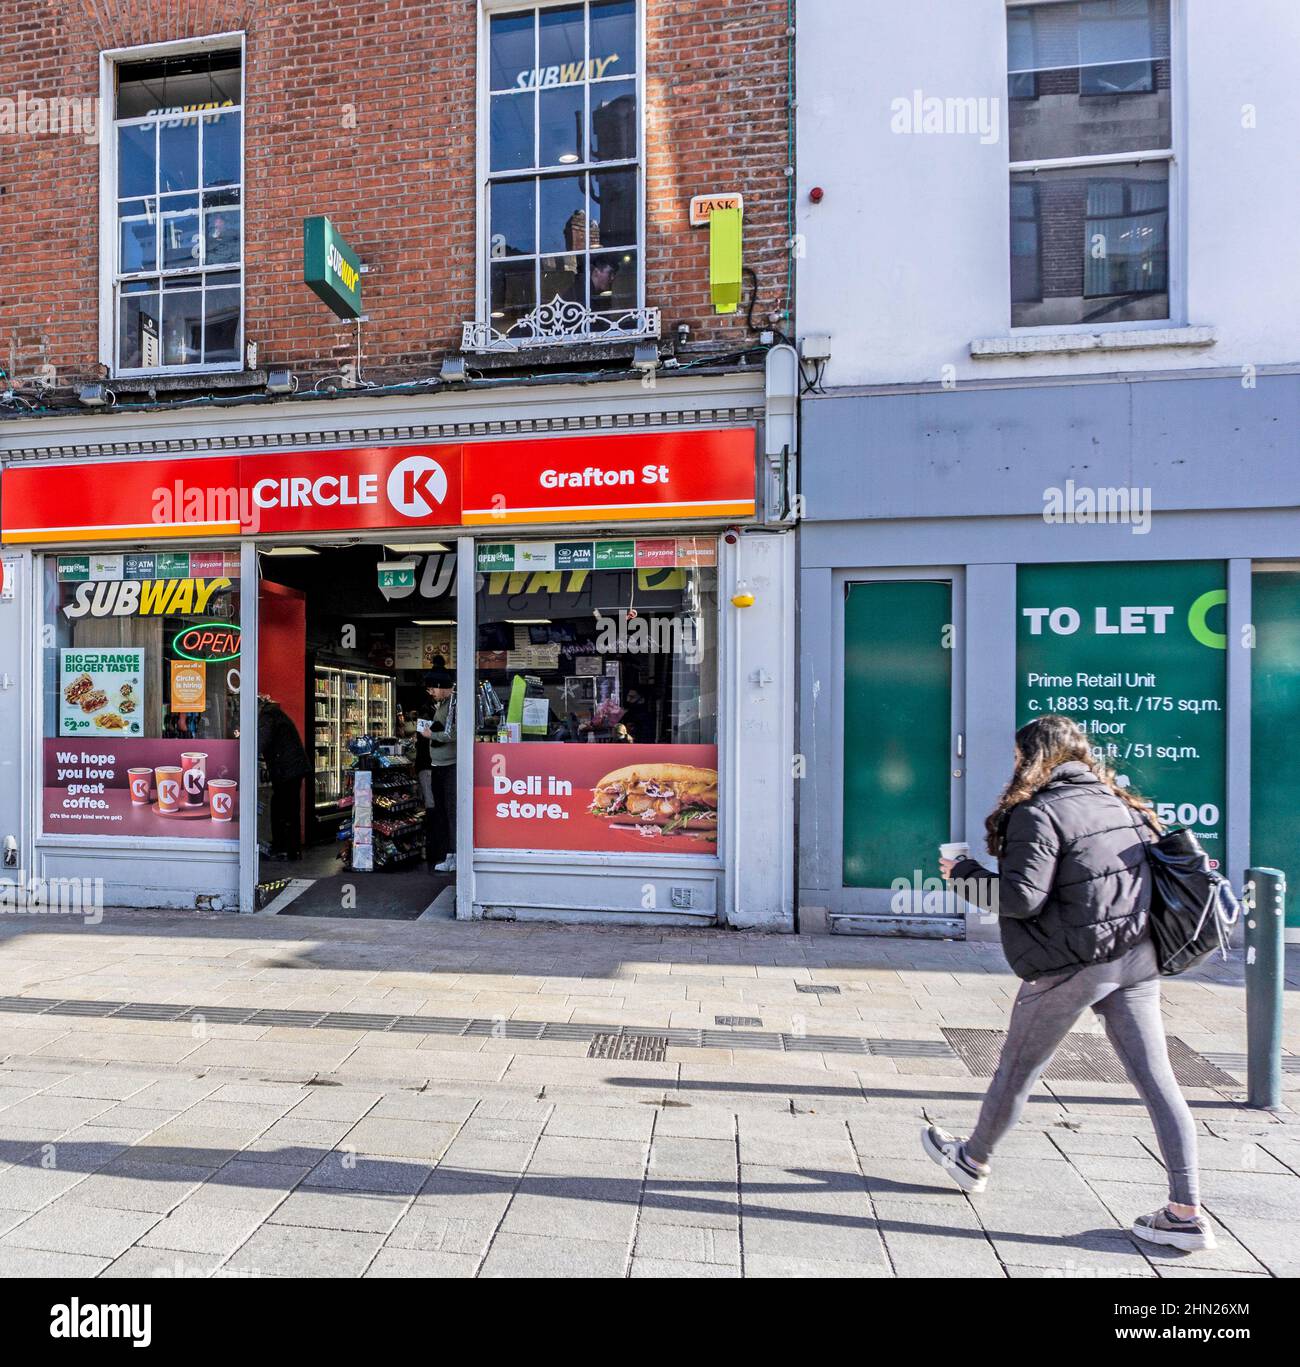 Ein eigenständiges Circle K-Einzelhandelsgeschäft in der Grafton Street, Dublin, Irland. Circle K ist ein großer Händler für Kraftstoffe. Stockfoto